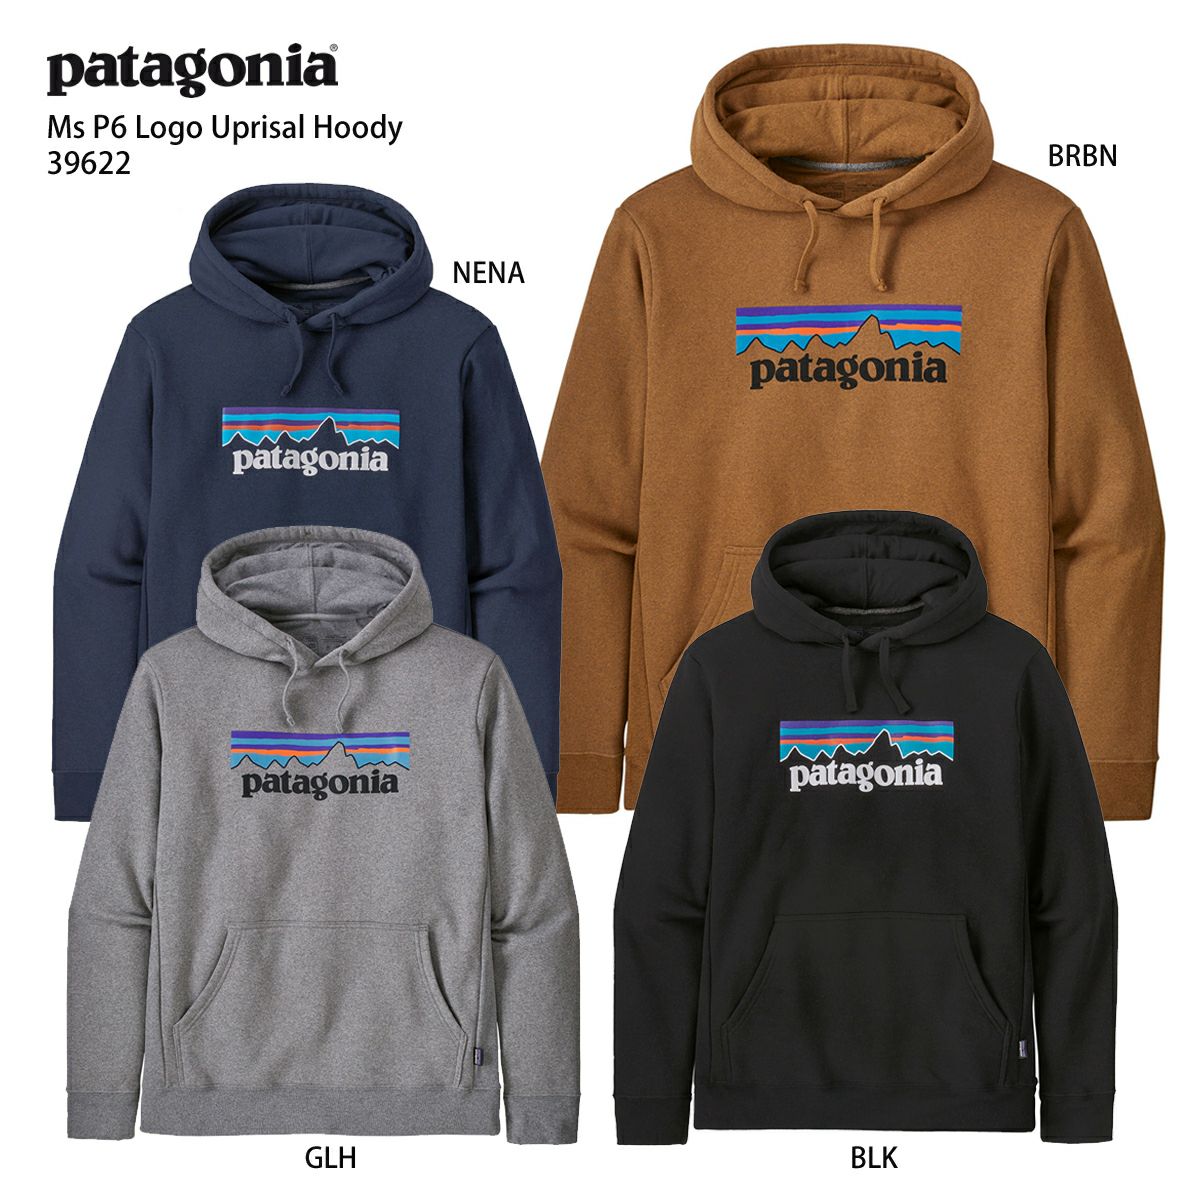 激安直営通販サイト パタゴニア Patagonia パーカー パーカー